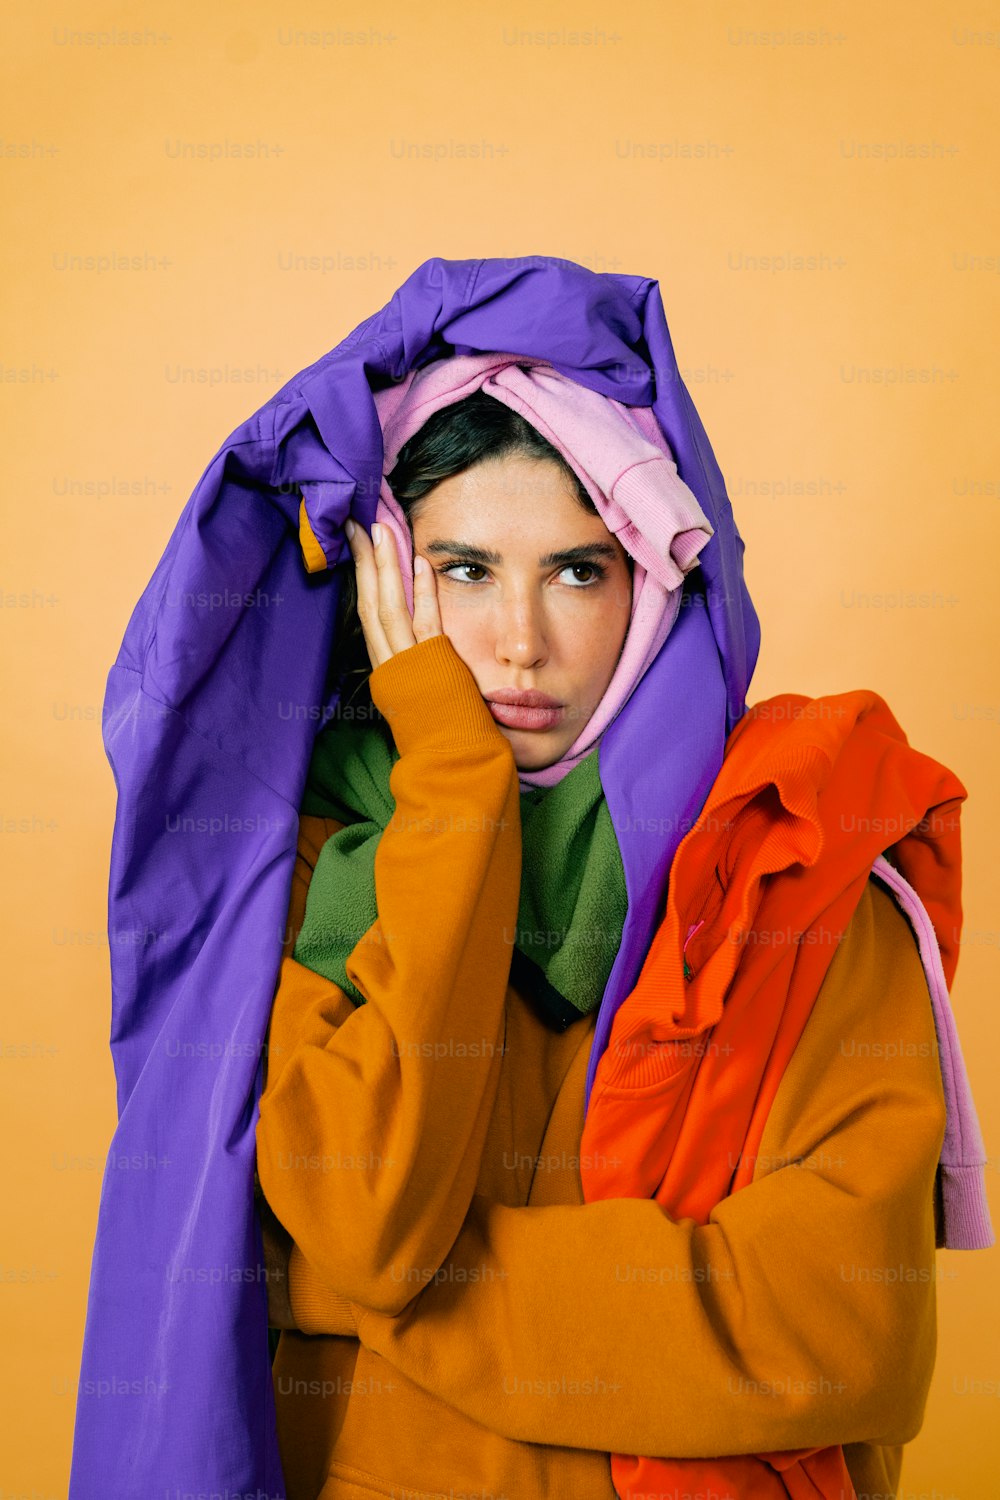 eine Frau mit einer lila-orangefarbenen Jacke, die ihr Gesicht bedeckt